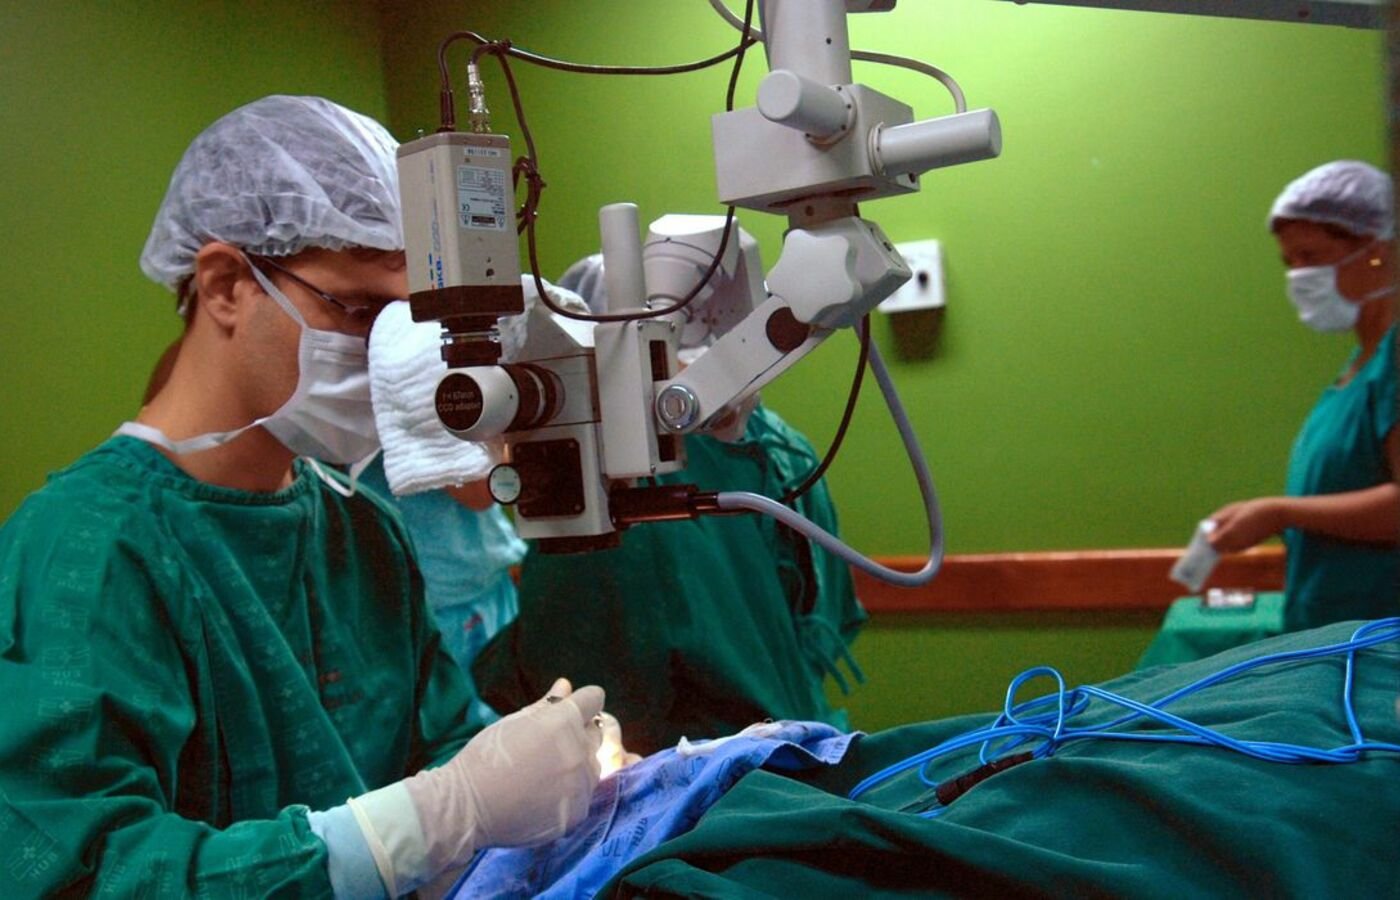 ministerio-da-saude-anuncia-programa-de-r$-600-milhoes-para-diminuir-filas-de-cirurgias